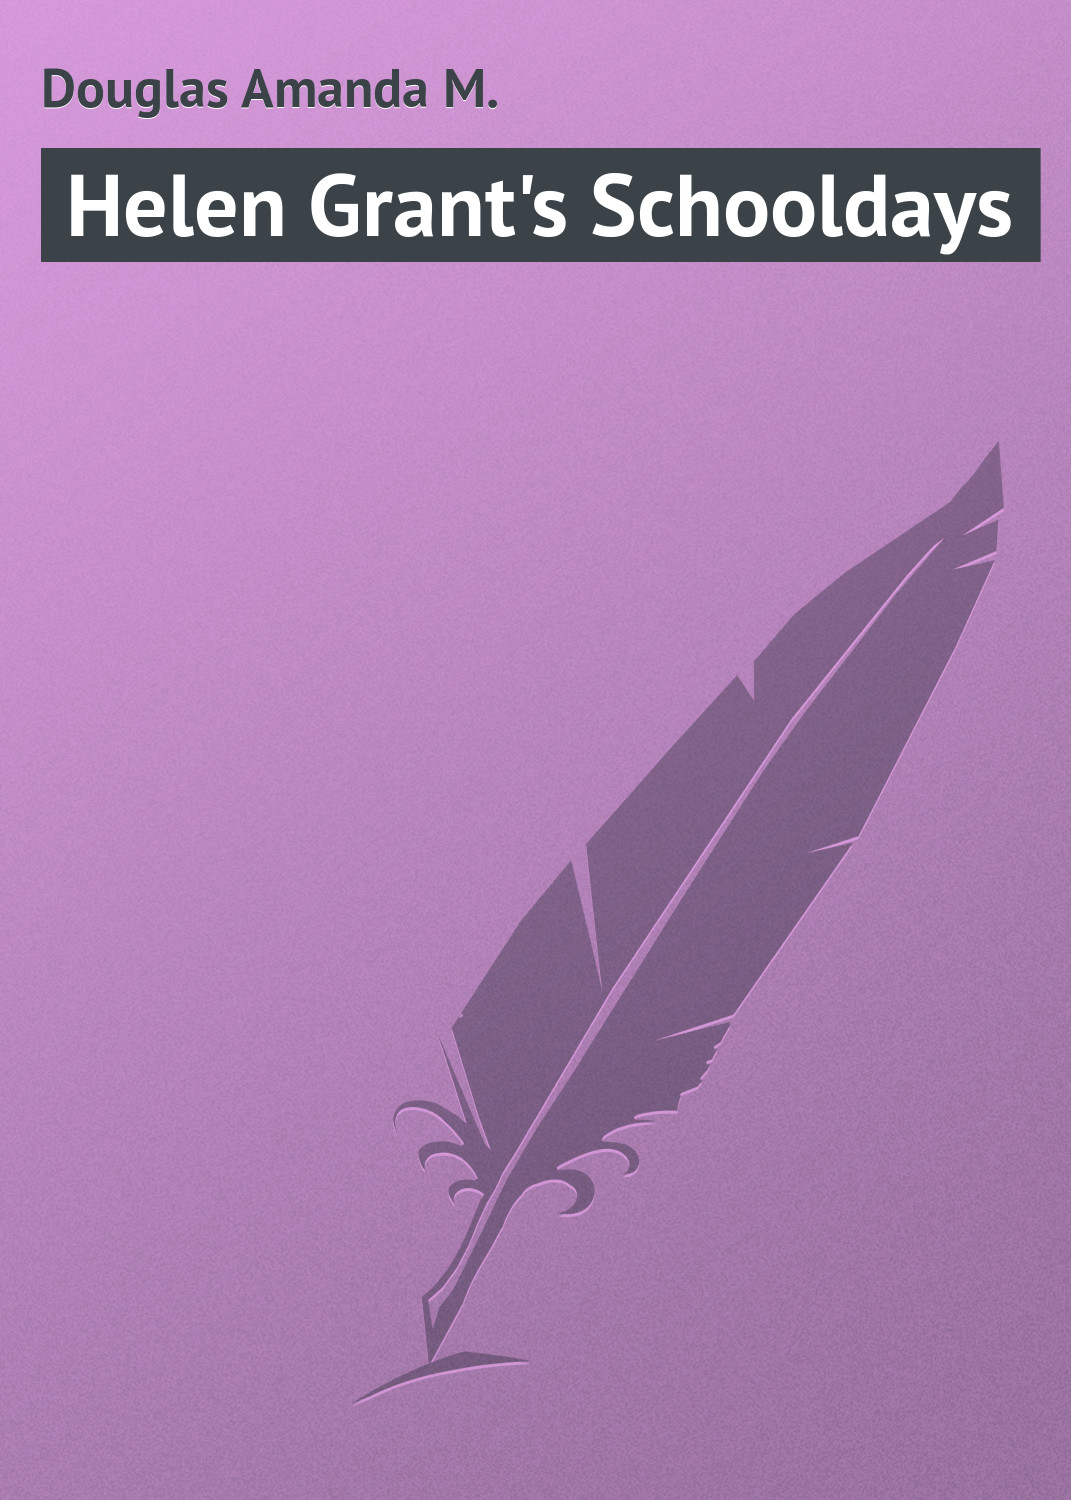 Книга Helen Grant's Schooldays из серии , созданная Amanda Douglas, может относится к жанру Зарубежная классика, Зарубежные детские книги. Стоимость электронной книги Helen Grant's Schooldays с идентификатором 23155051 составляет 5.99 руб.